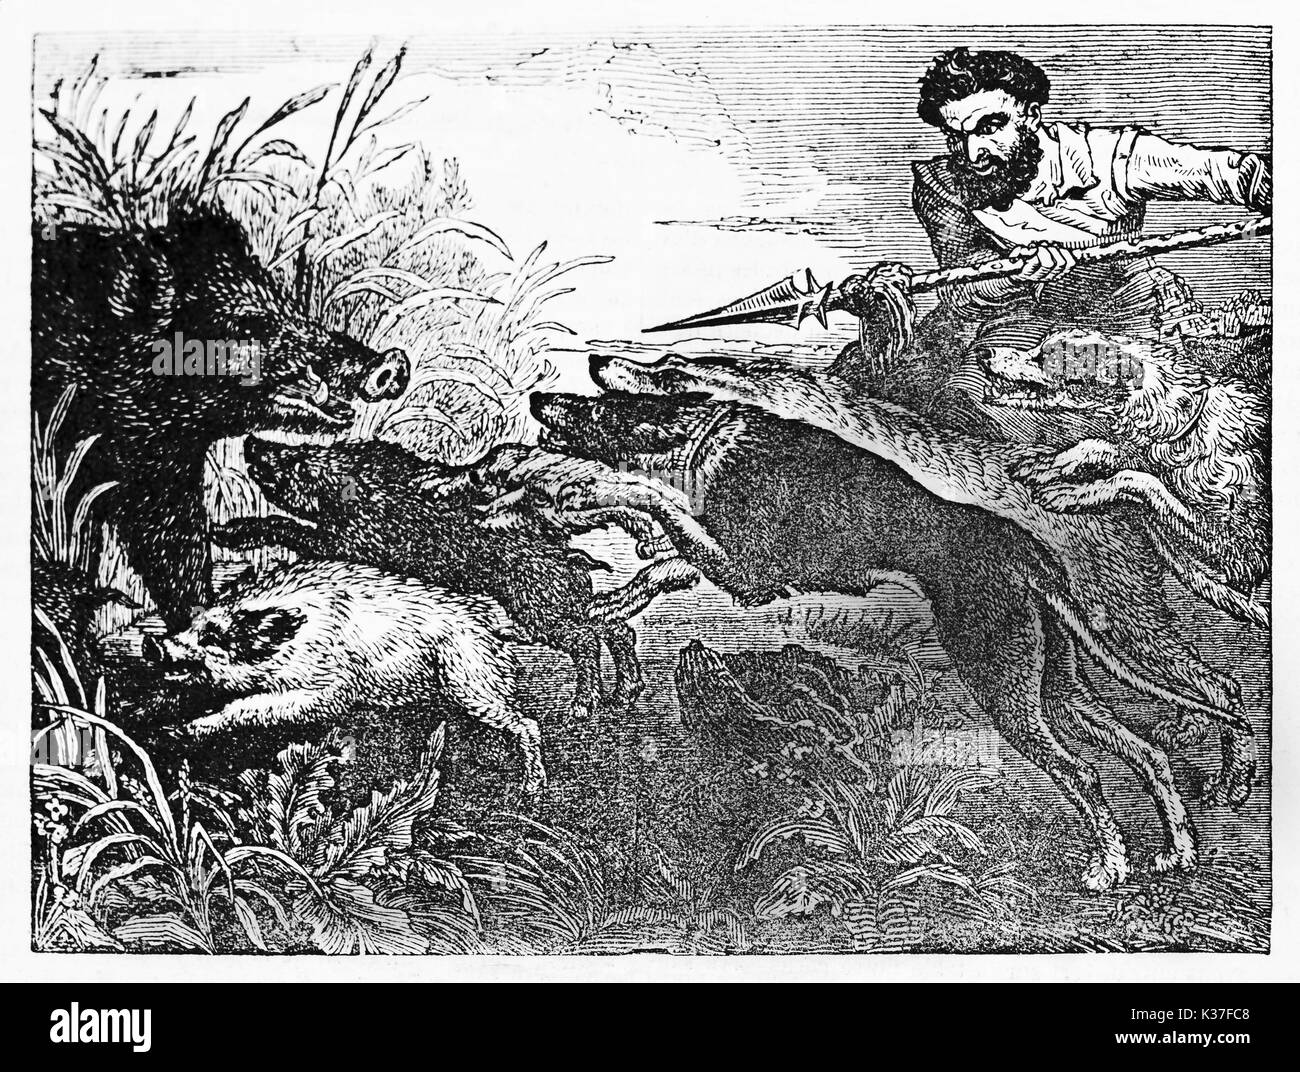 Hunter médiévale tenant une lance et ses chiens contre un sanglier se cacher dans un buisson avec ses chiots. Vieille Illustration d'auteur non identifié publié le magasin pittoresque Paris 1834 Banque D'Images